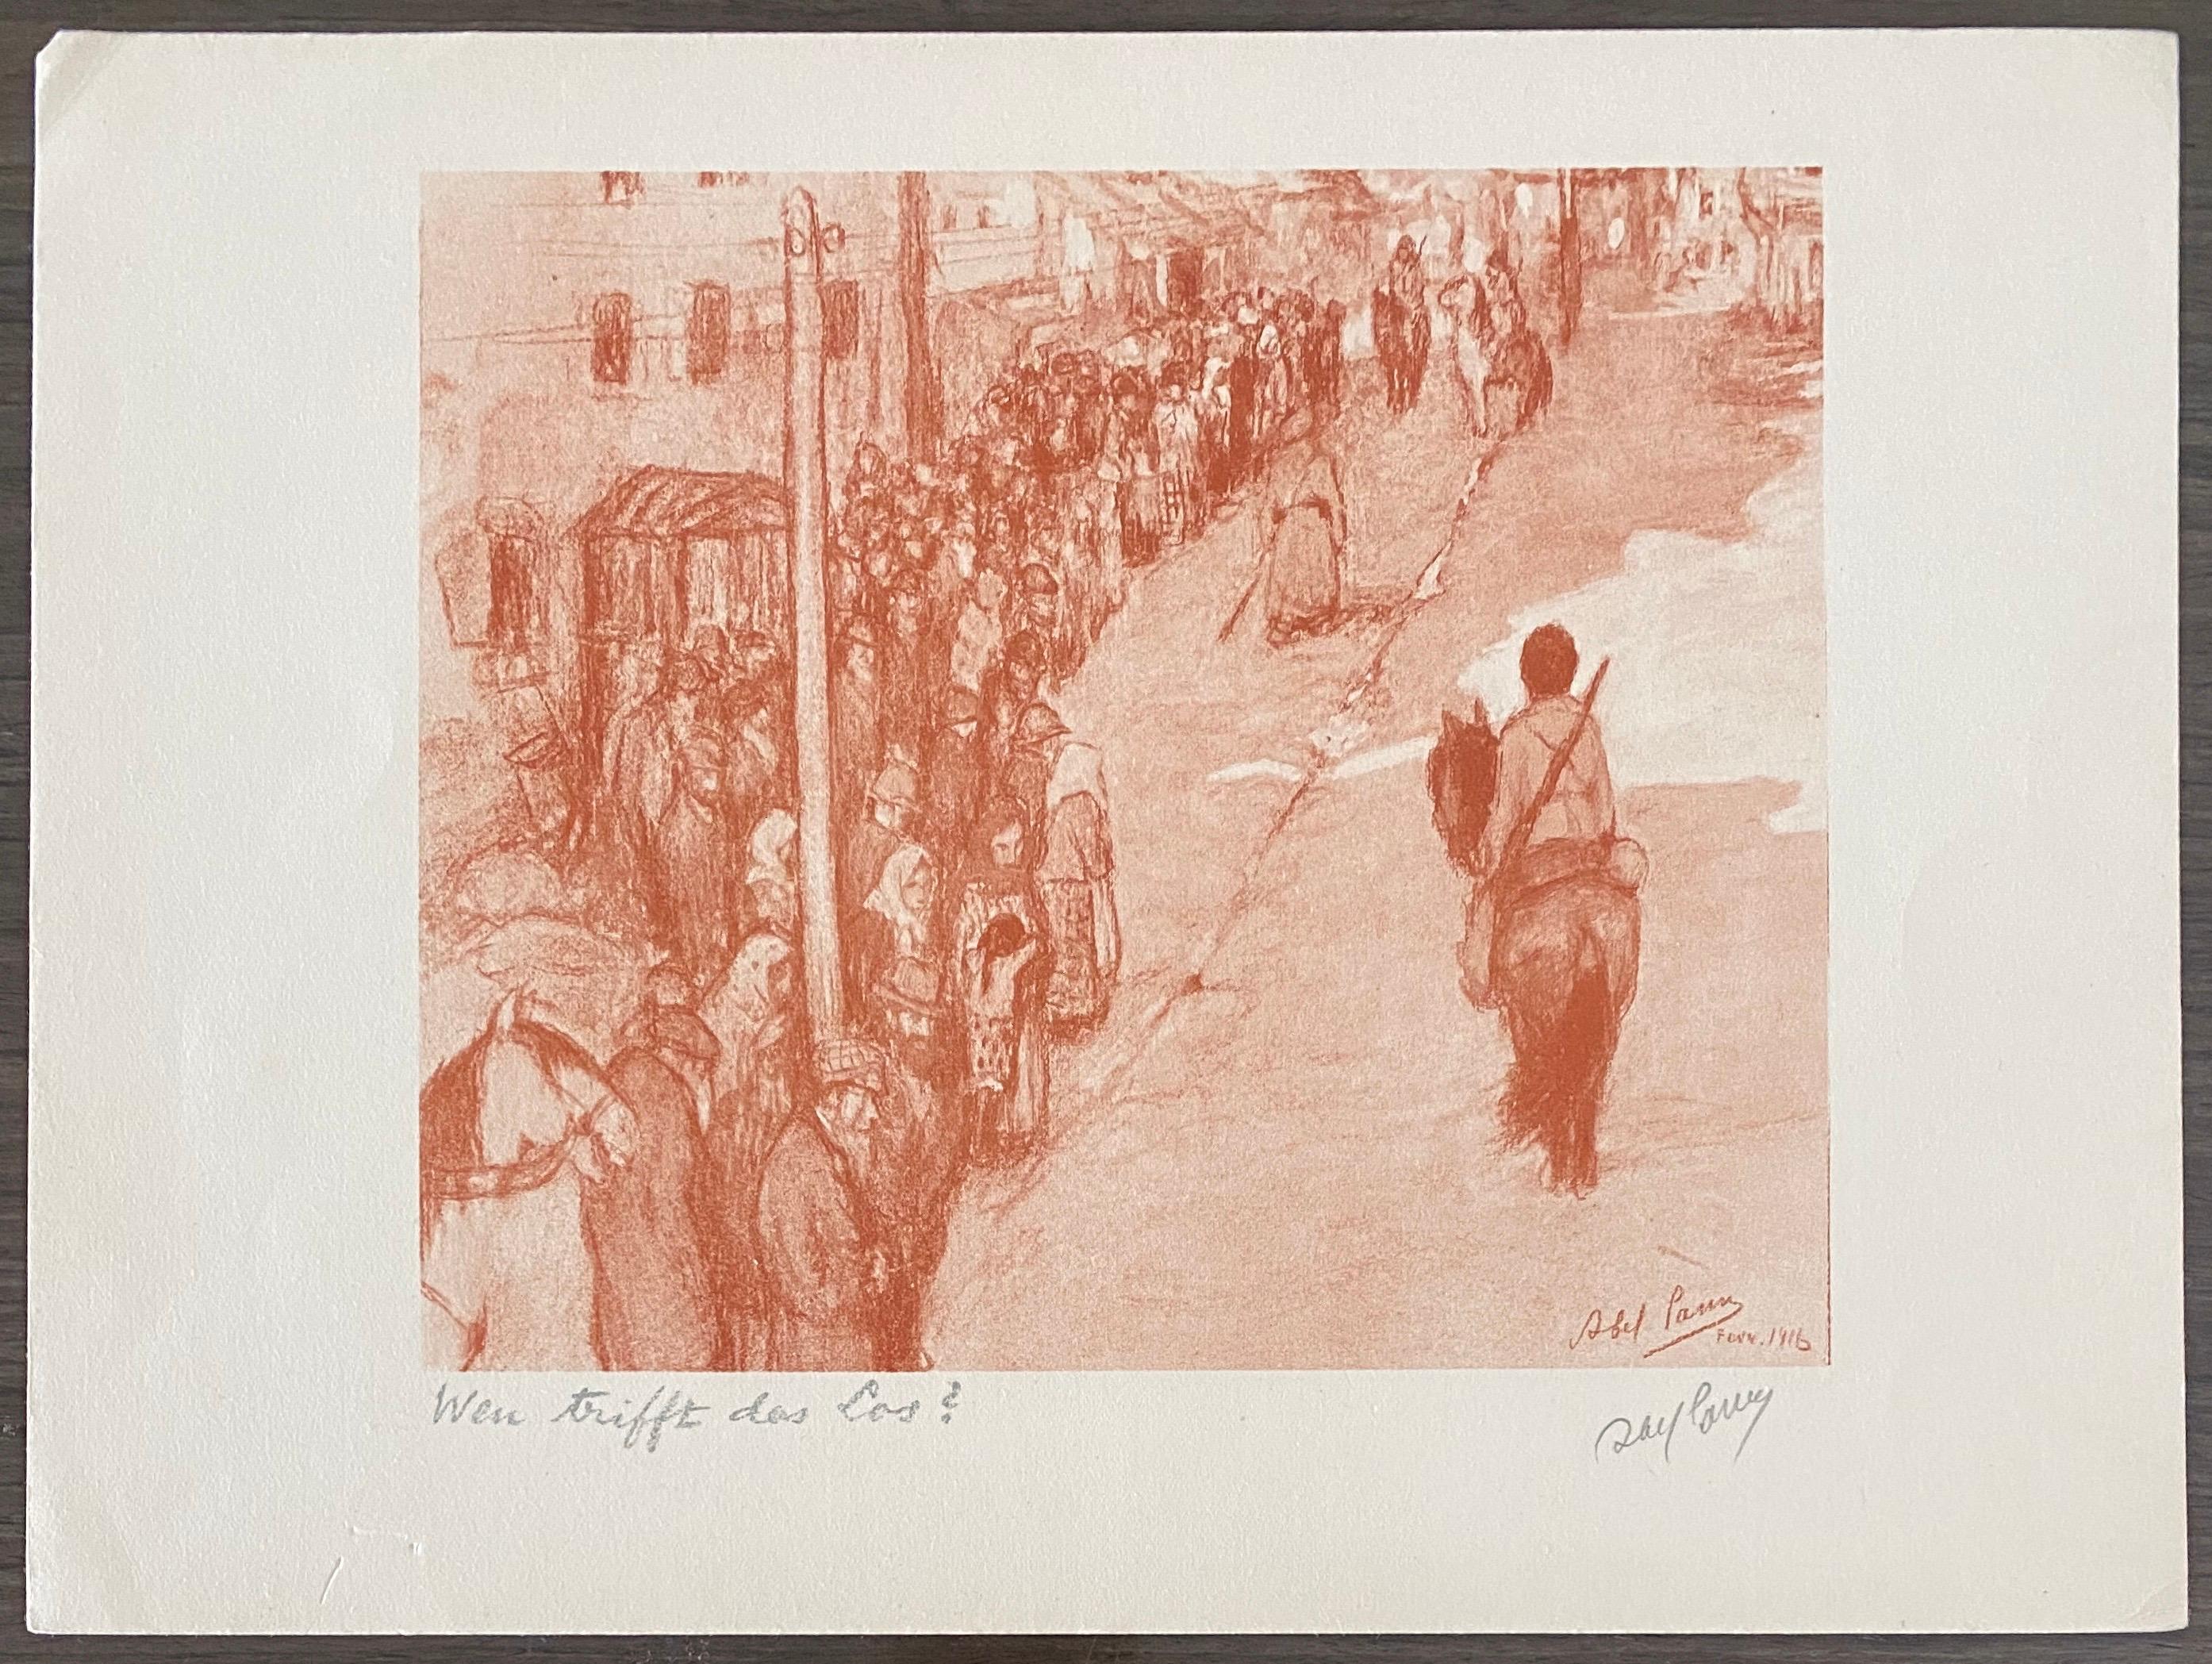 Abel Pann (1883-1963) était un peintre juif européen qui s'est installé dans le quartier de Talpiot à Jérusalem au début du XXe siècle et a enseigné à l'Académie des arts de Bezalel sous la direction de Boris Schatz.
Abba Pfeffermann (plus tard Abel